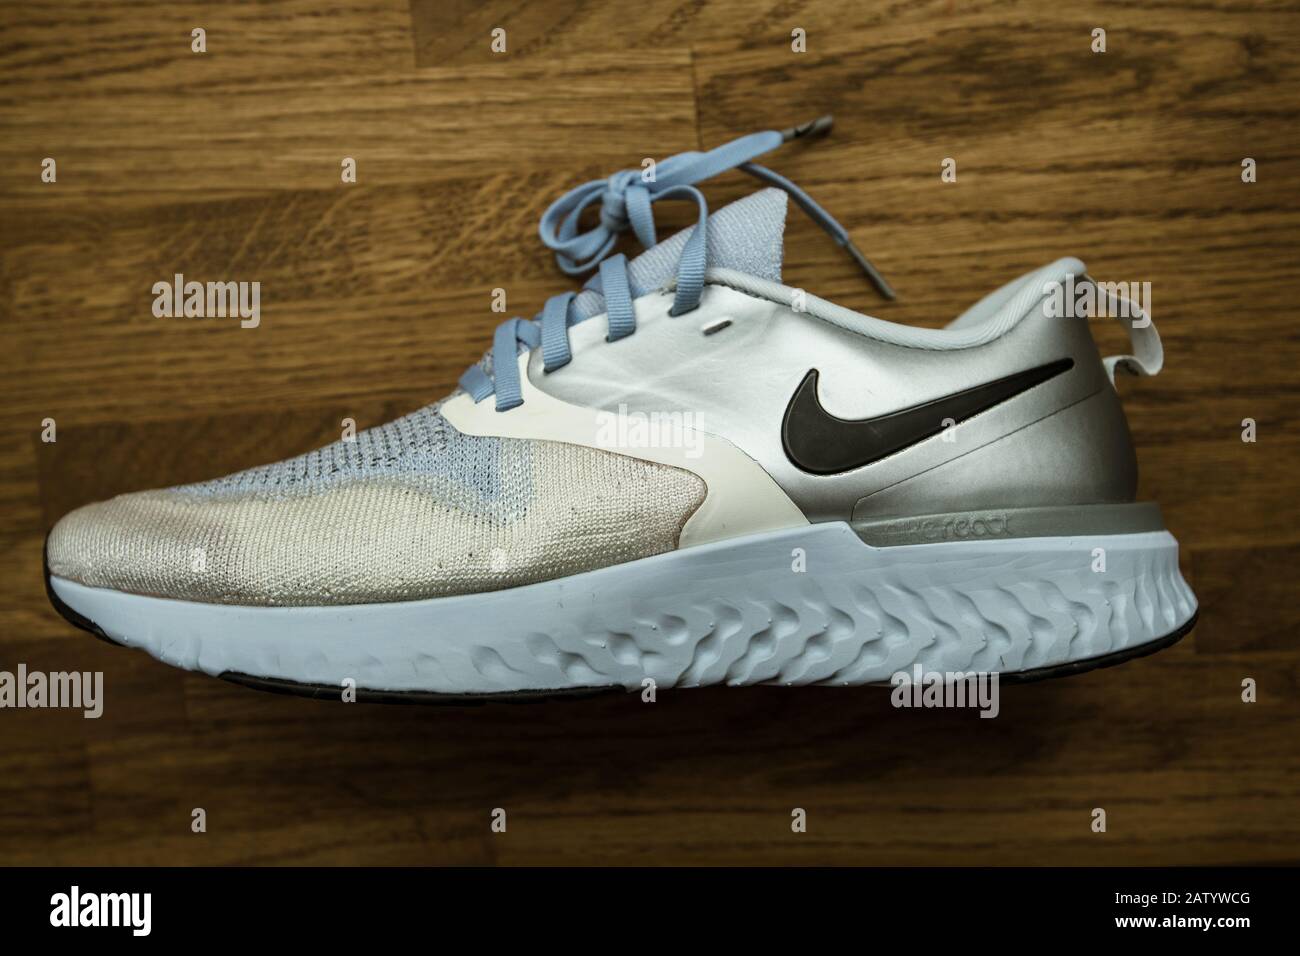 París, - 23 de septiembre de 2019: Unas zapatillas de running profesionales con vista aérea fabricadas por el modelo Nike Odyssey React Flyknit 2 Premium en color plata y gris Fotografía de stock Alamy